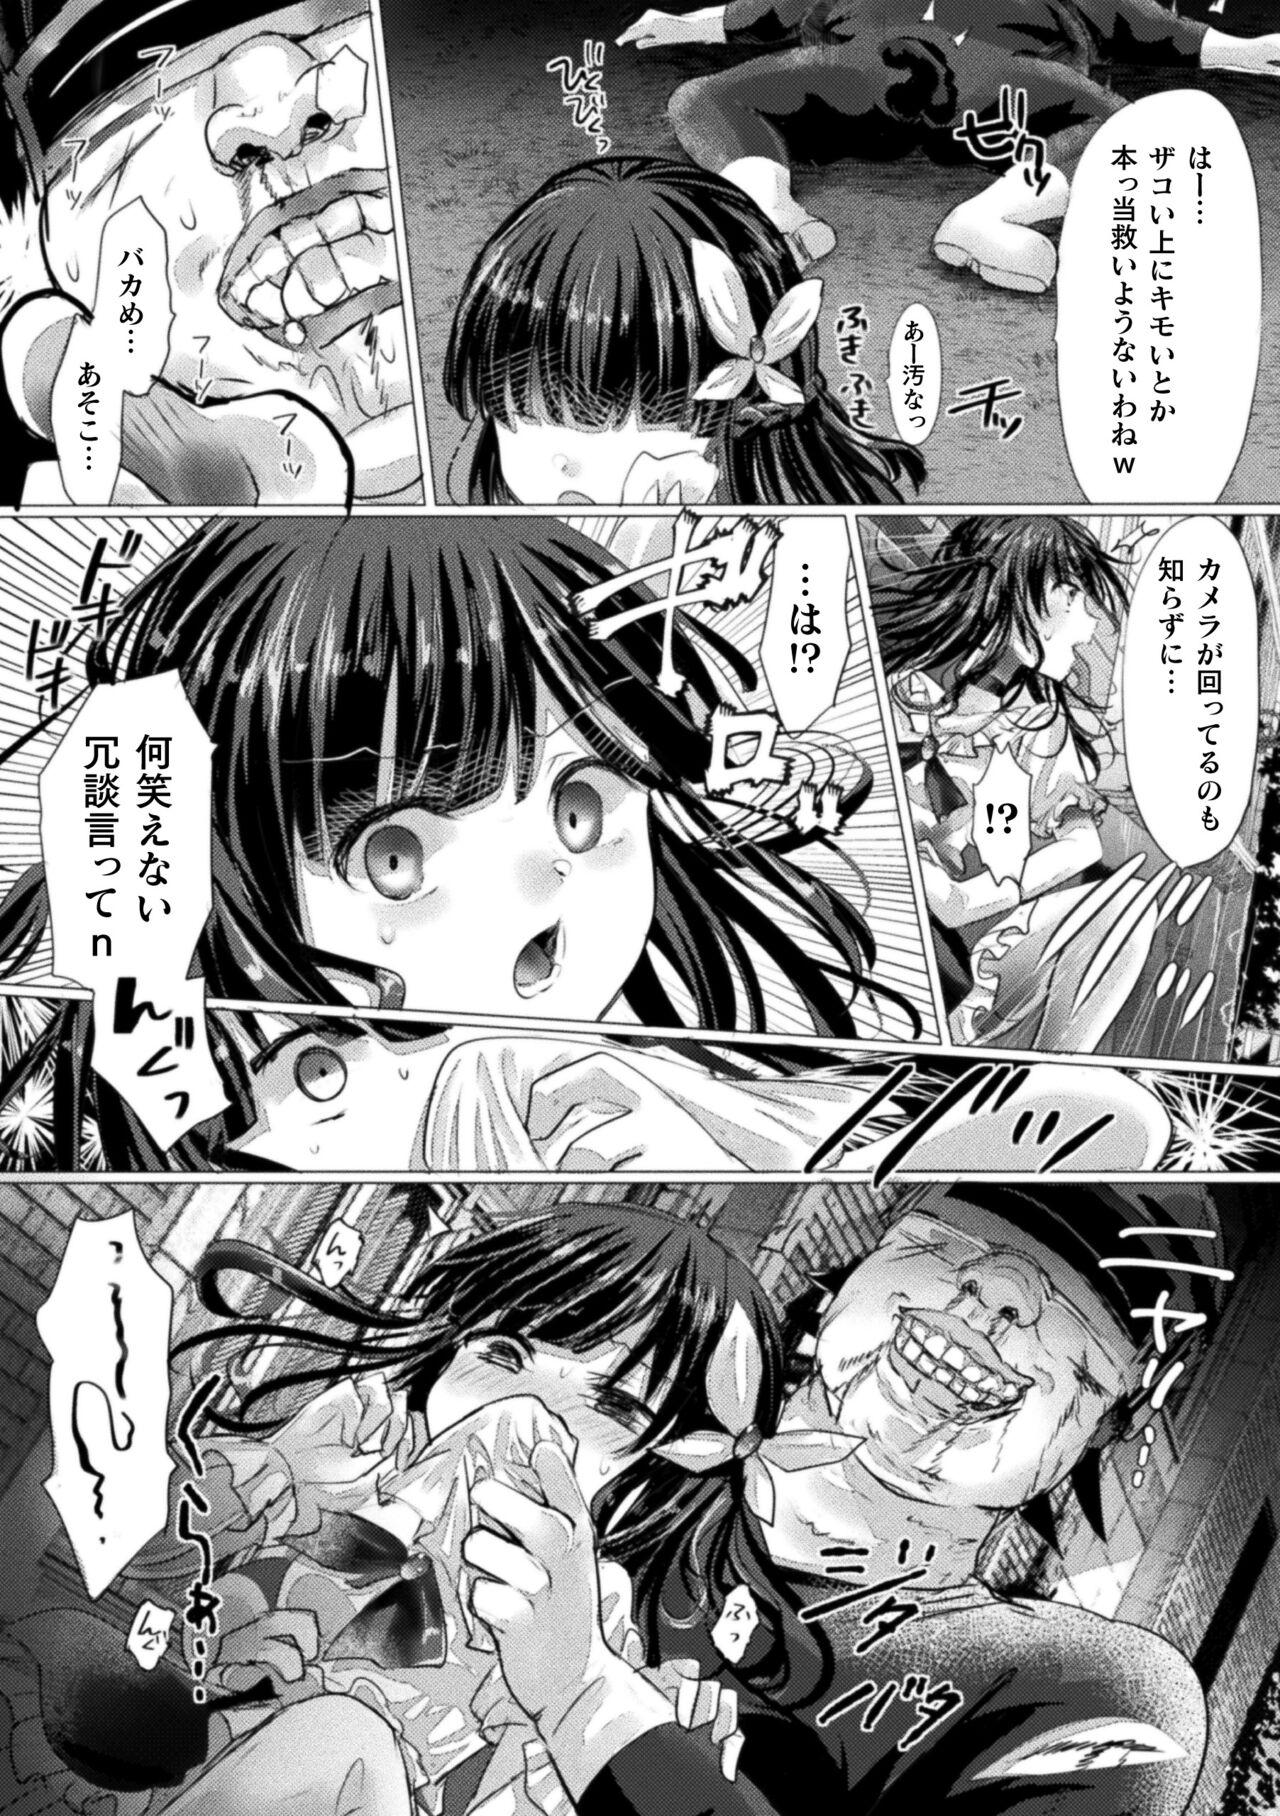 2D Comic Magazine Mesugaki Henshin Heroine Kikaikan Seisai Hijou no Wakarase Machine de Renzoku Loli Acme Vol. 3 48